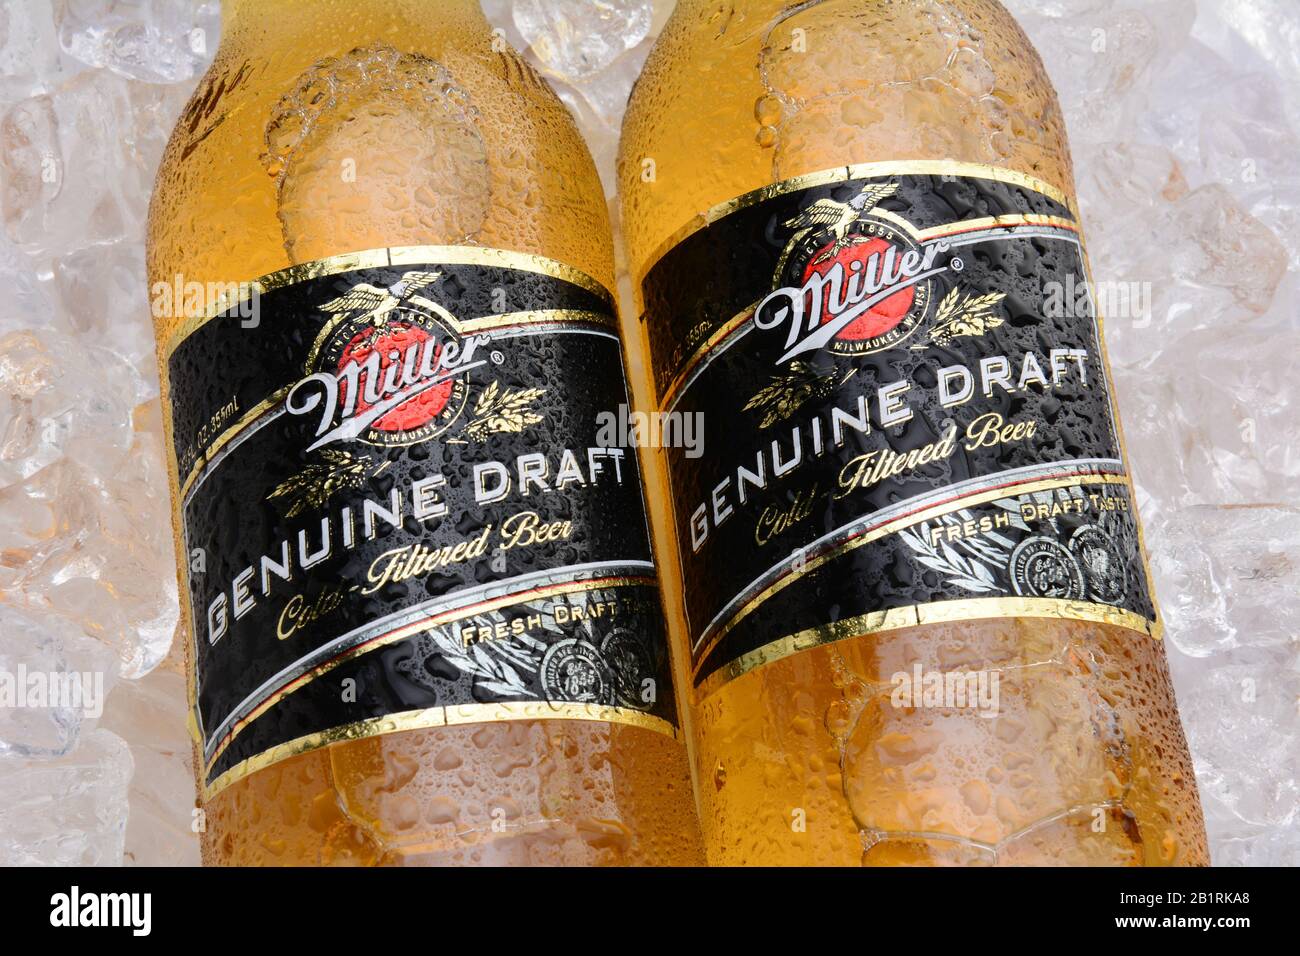 Irvine, CA - 27. MAI 2014: Zwei Flaschen Miller Genuine Draft, auf Eis. MGD wird tatsächlich aus demselben Rezept wie Miller High Life hergestellt, außer es ist col Stockfoto